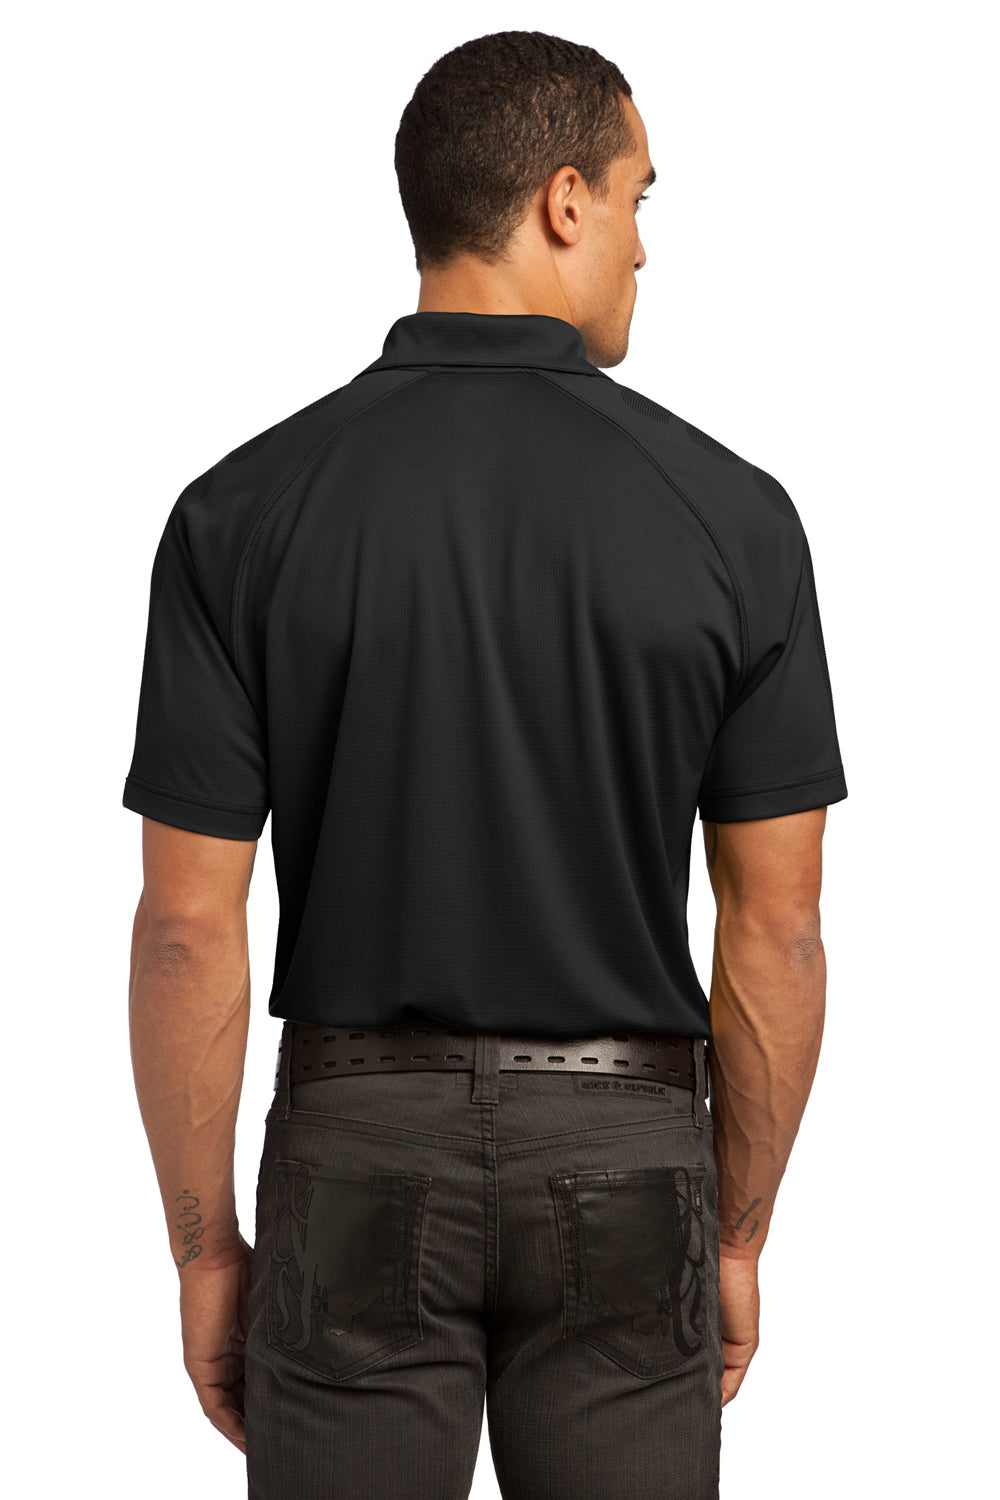 Ogio OG110 Mens Optic Moisture Wicking Short Sleeve Polo Shirt Black Back